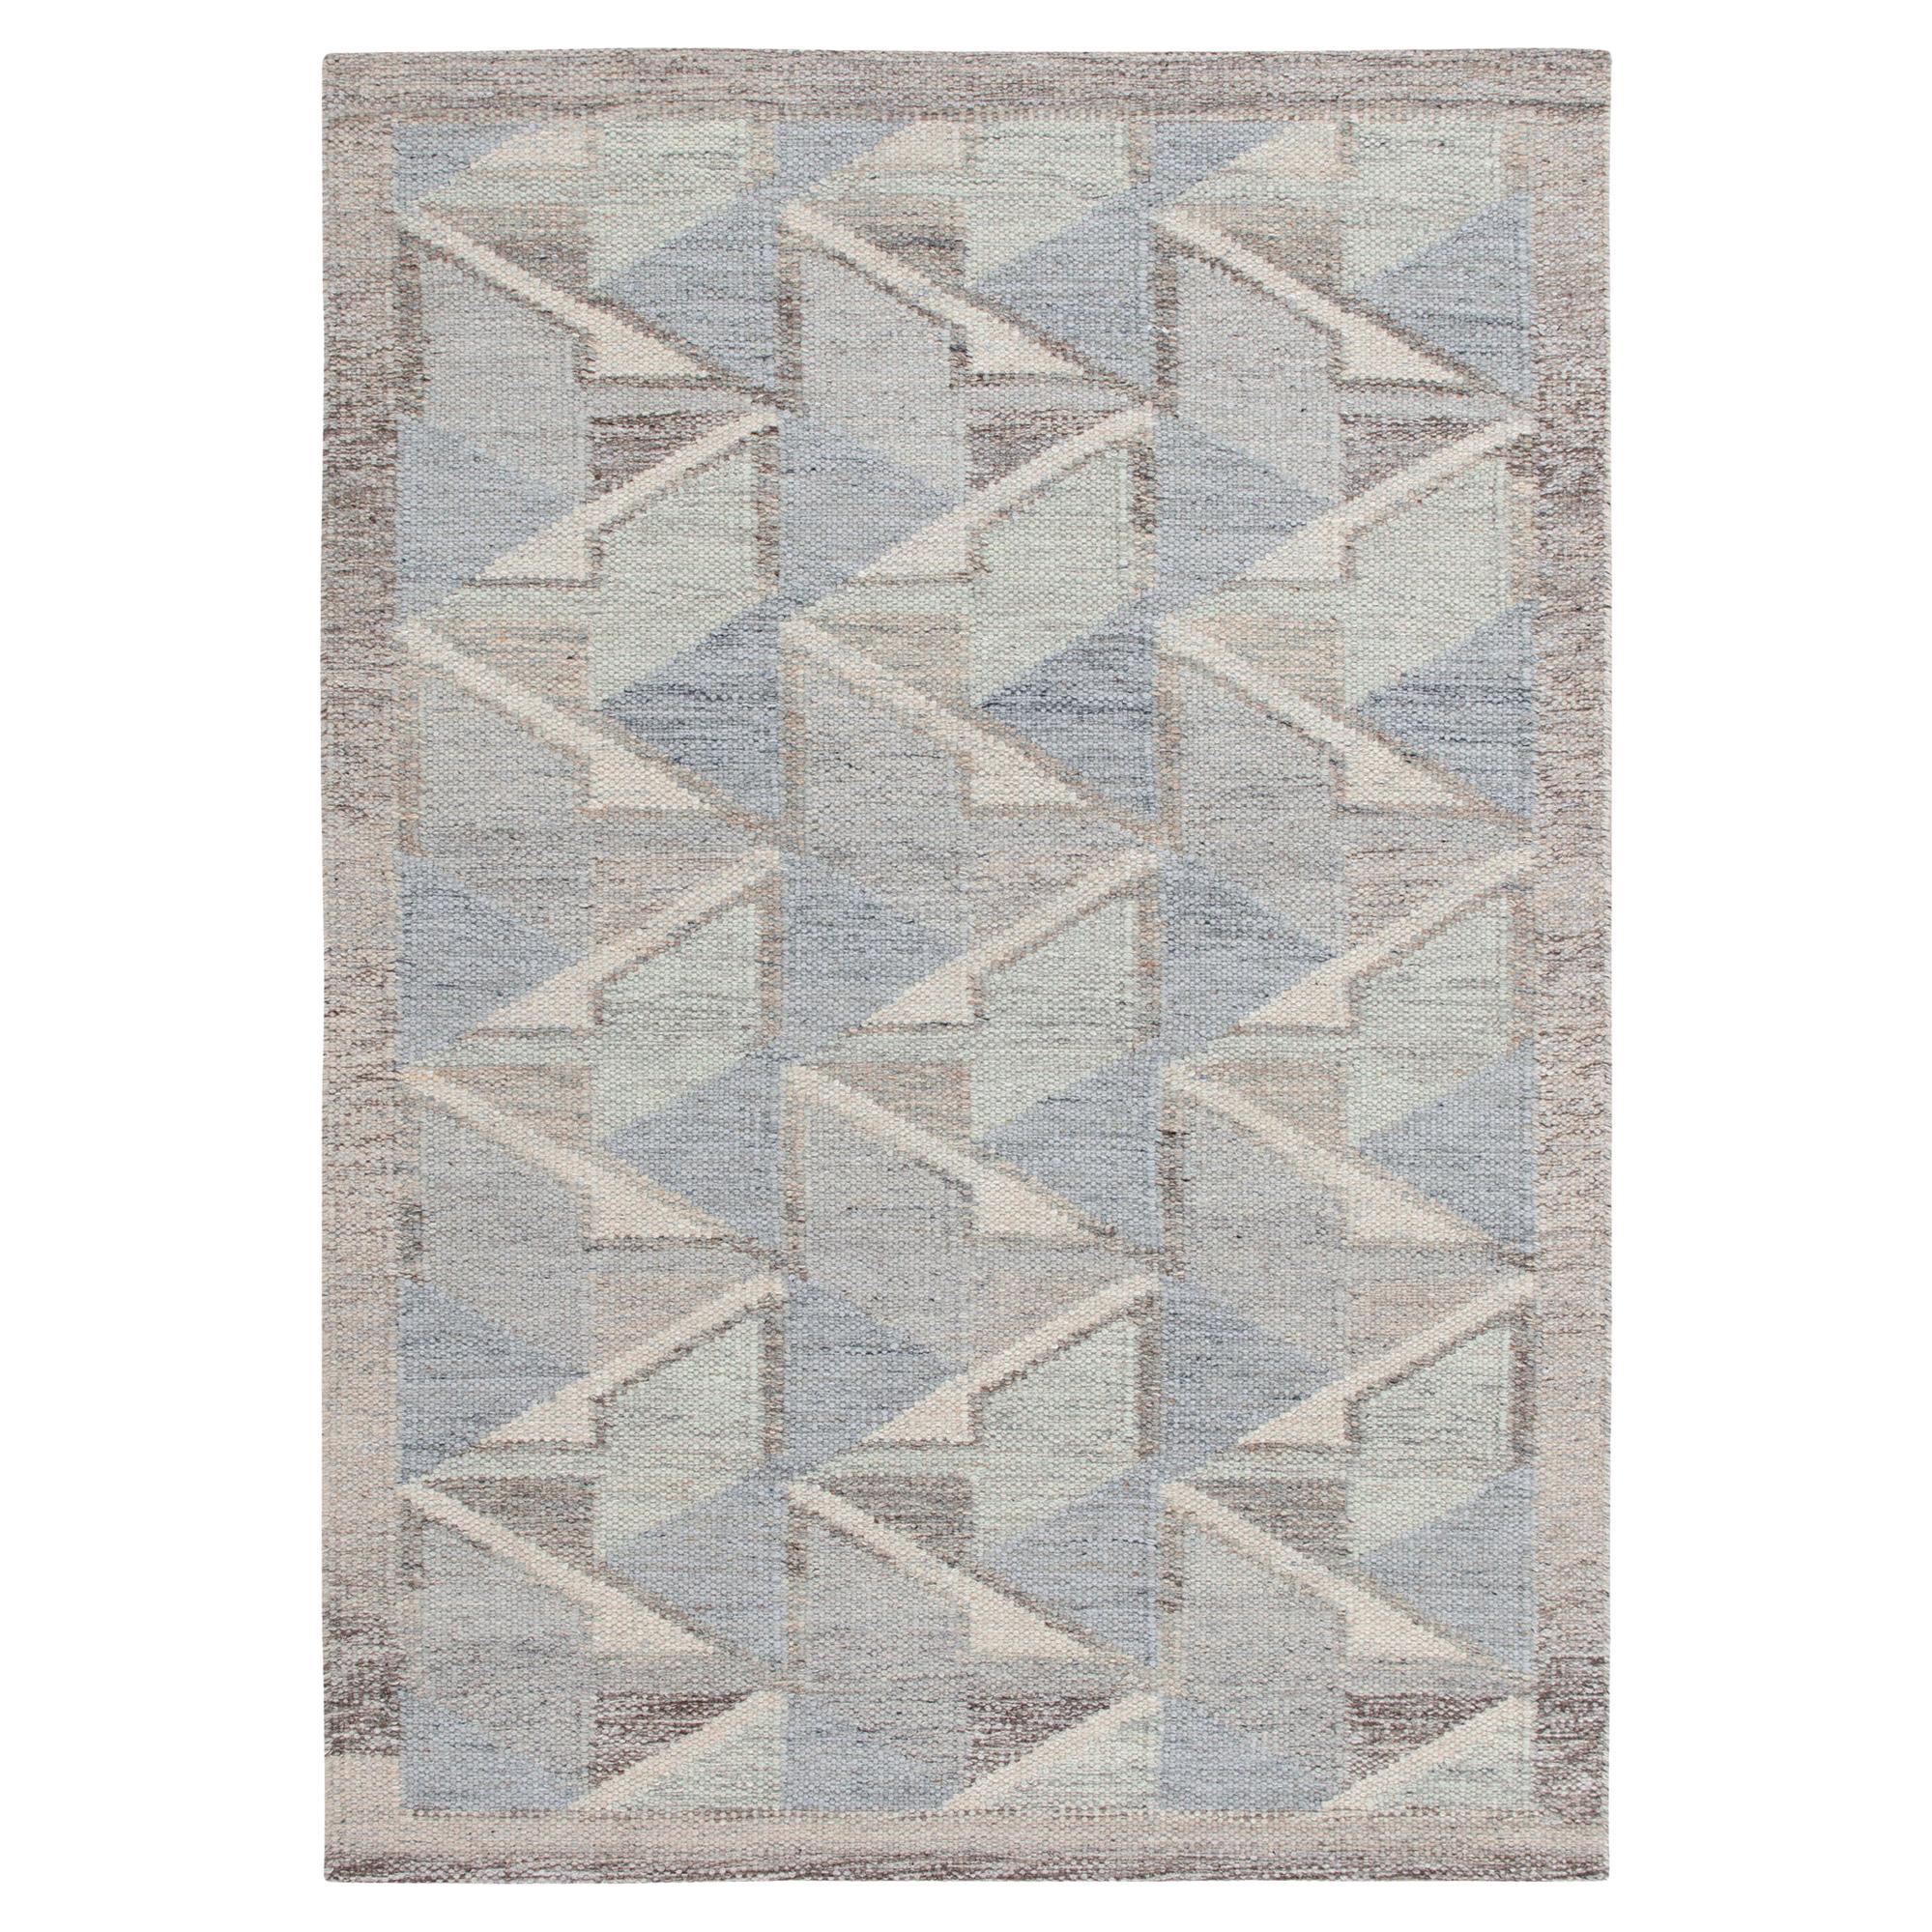 Teppich & Kelim-Teppich im skandinavischen Stil in Blau & Grau mit geometrischem Muster